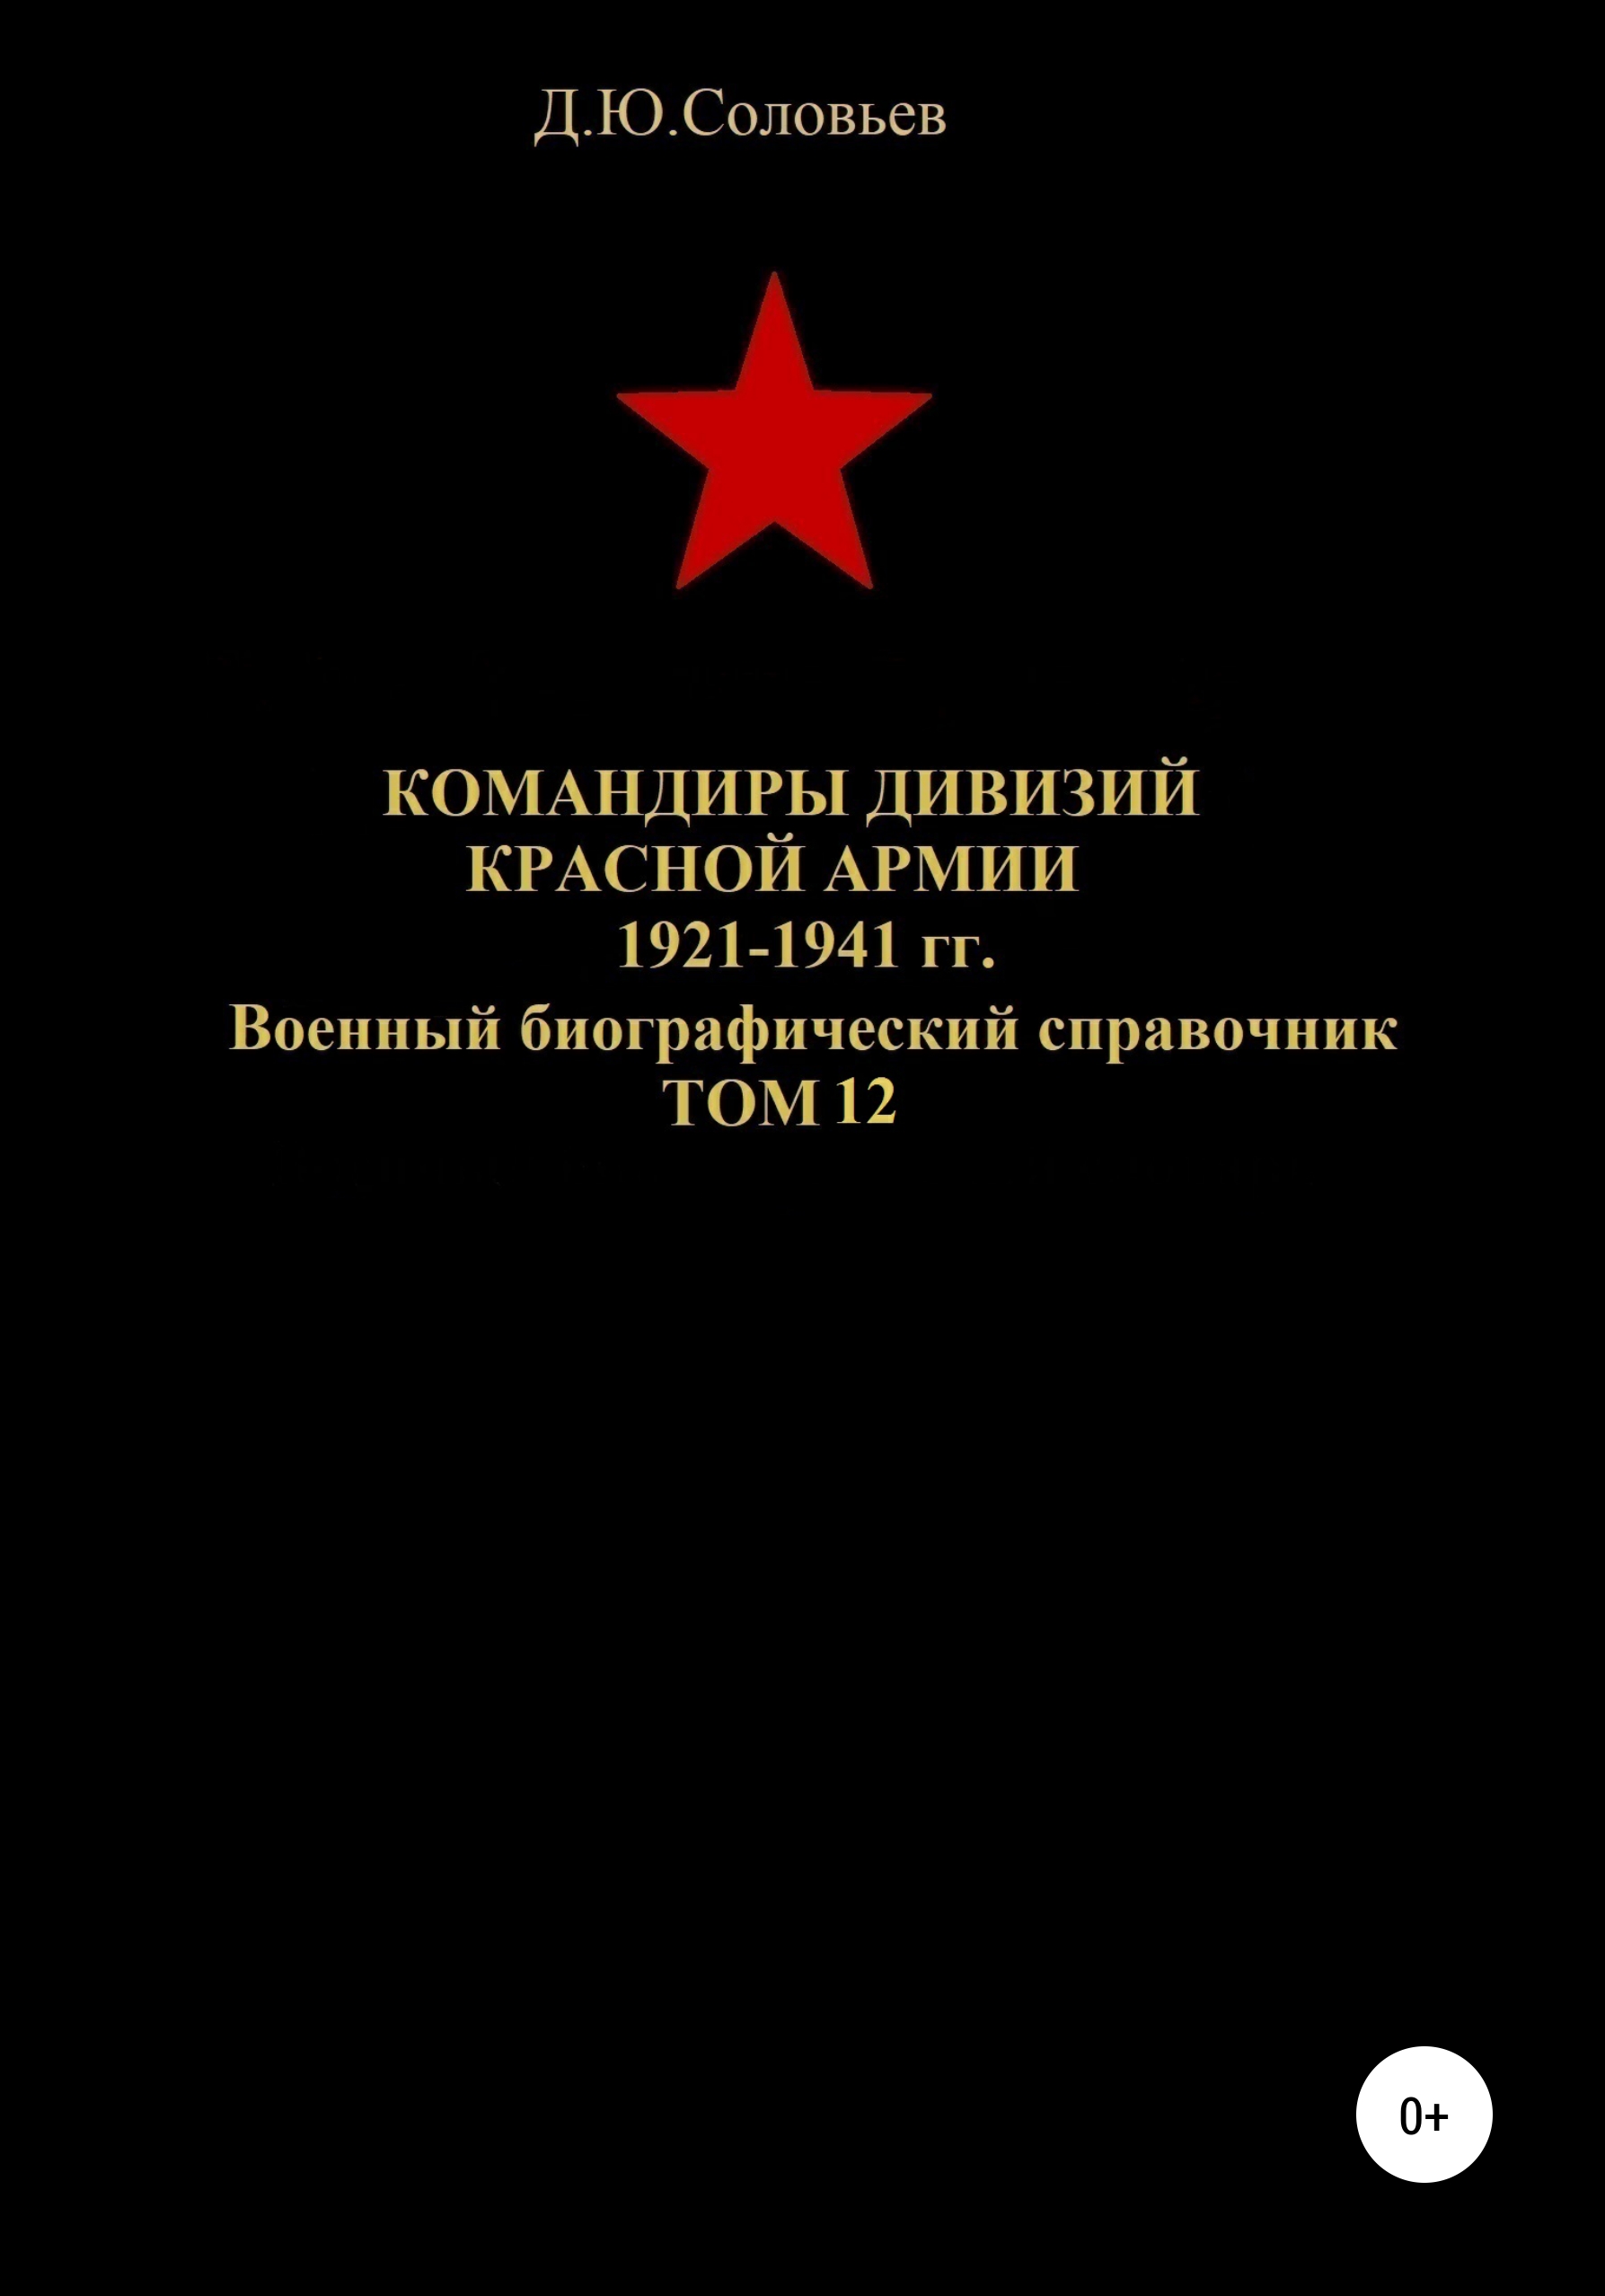 Командиры дивизий Красной Армии 1921-1941 гг. Том 12